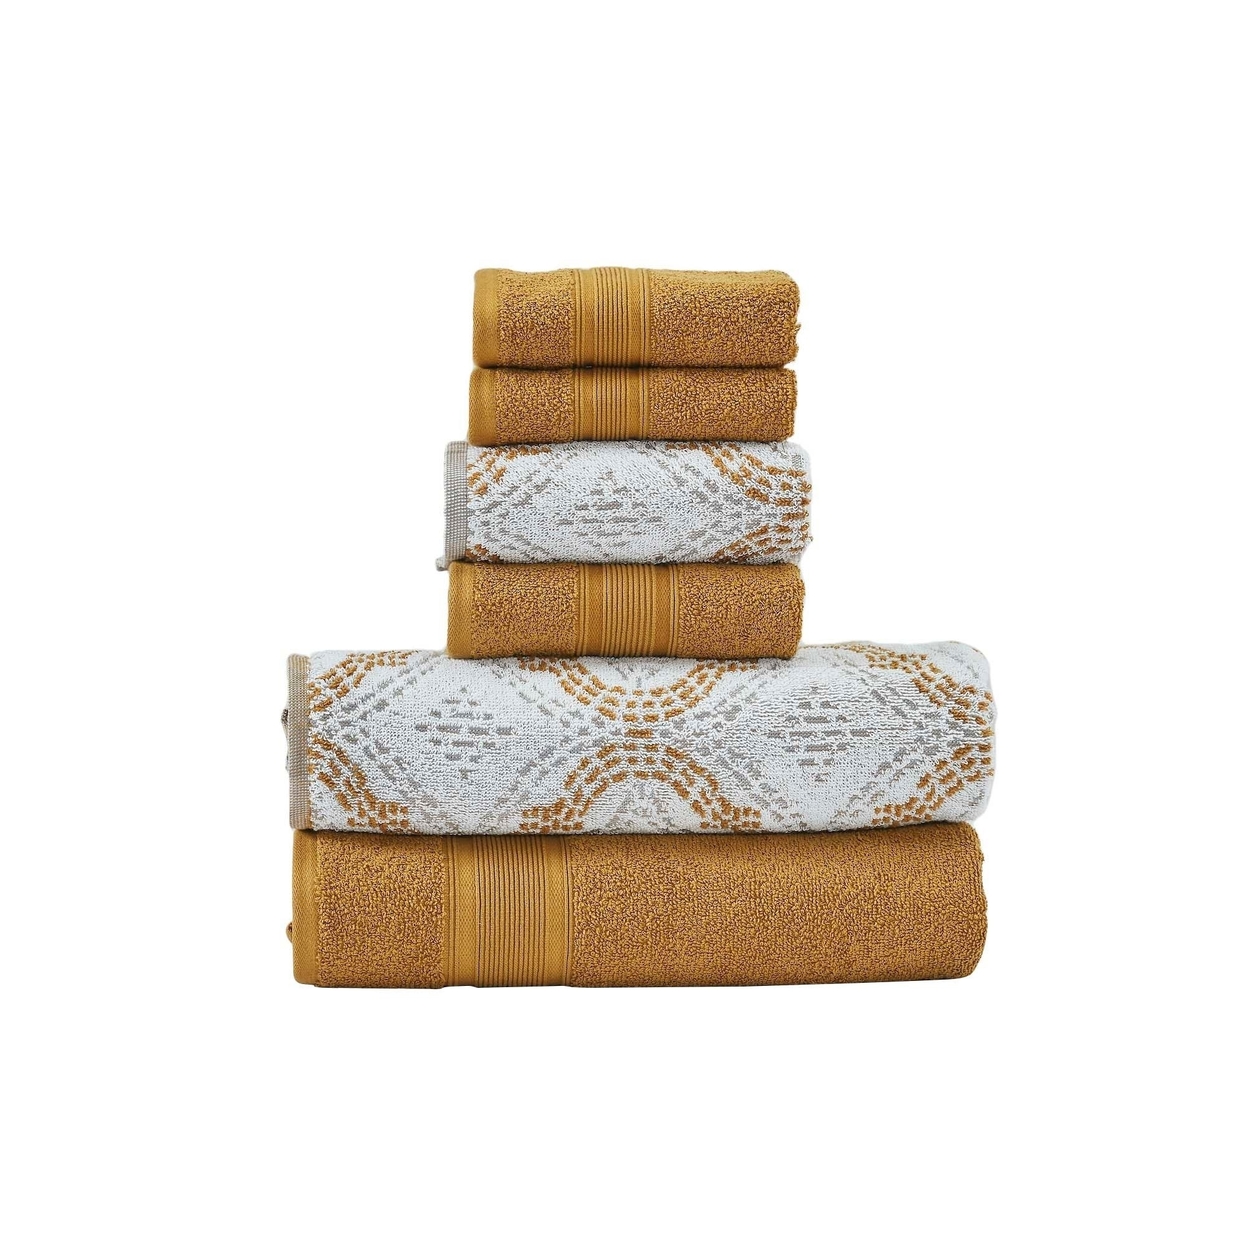 Oya 6pc Cotton Towel Set, Quatrefoil, White, Yellow By The Urban Port- Saltoro Sherpi